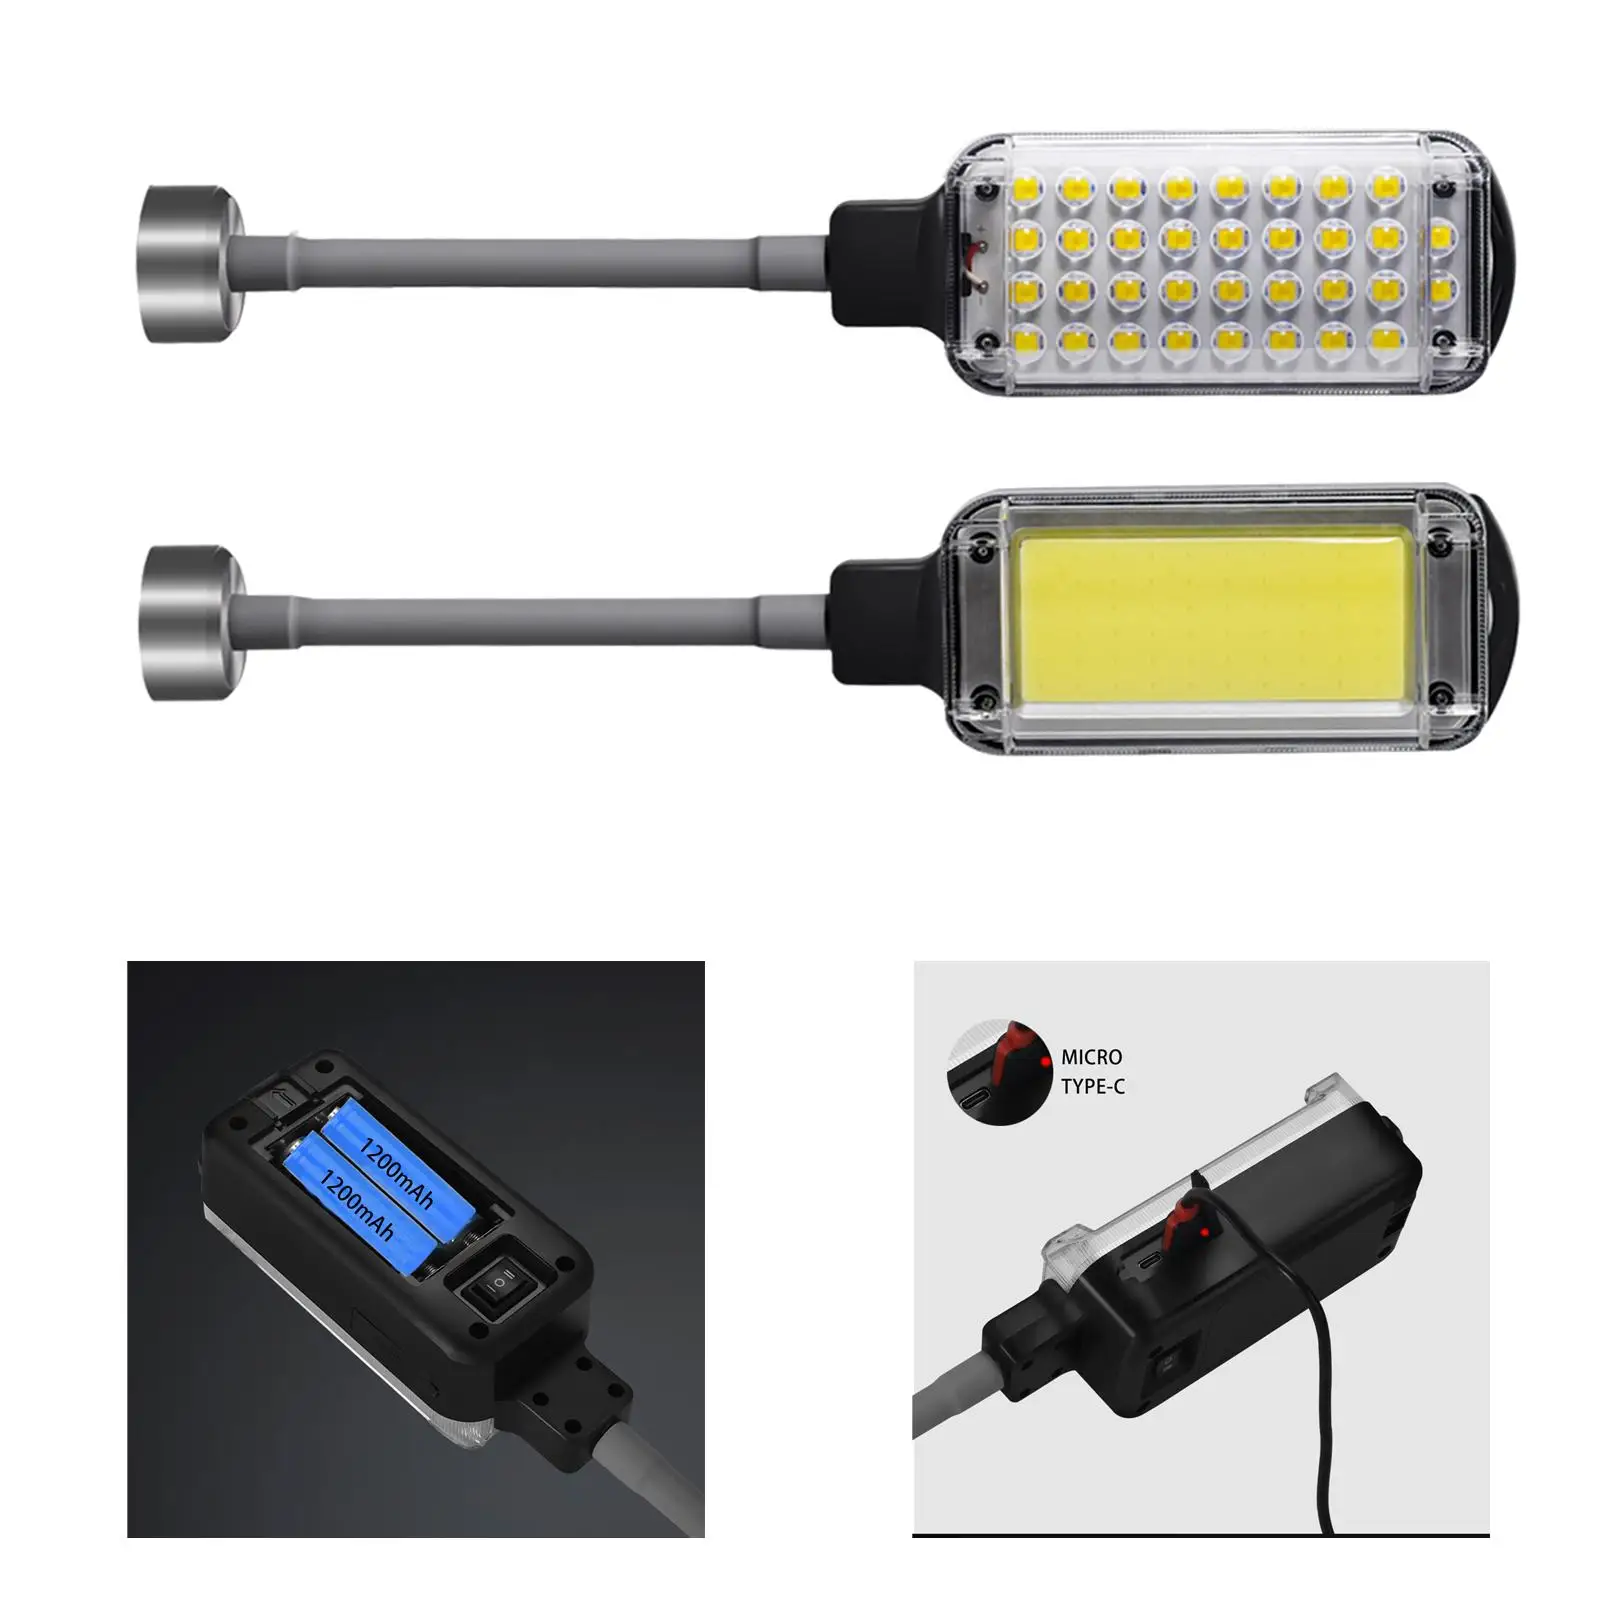 LED Work Light, Rechargeable Work Light, Portable Magnetic LED Work Light,